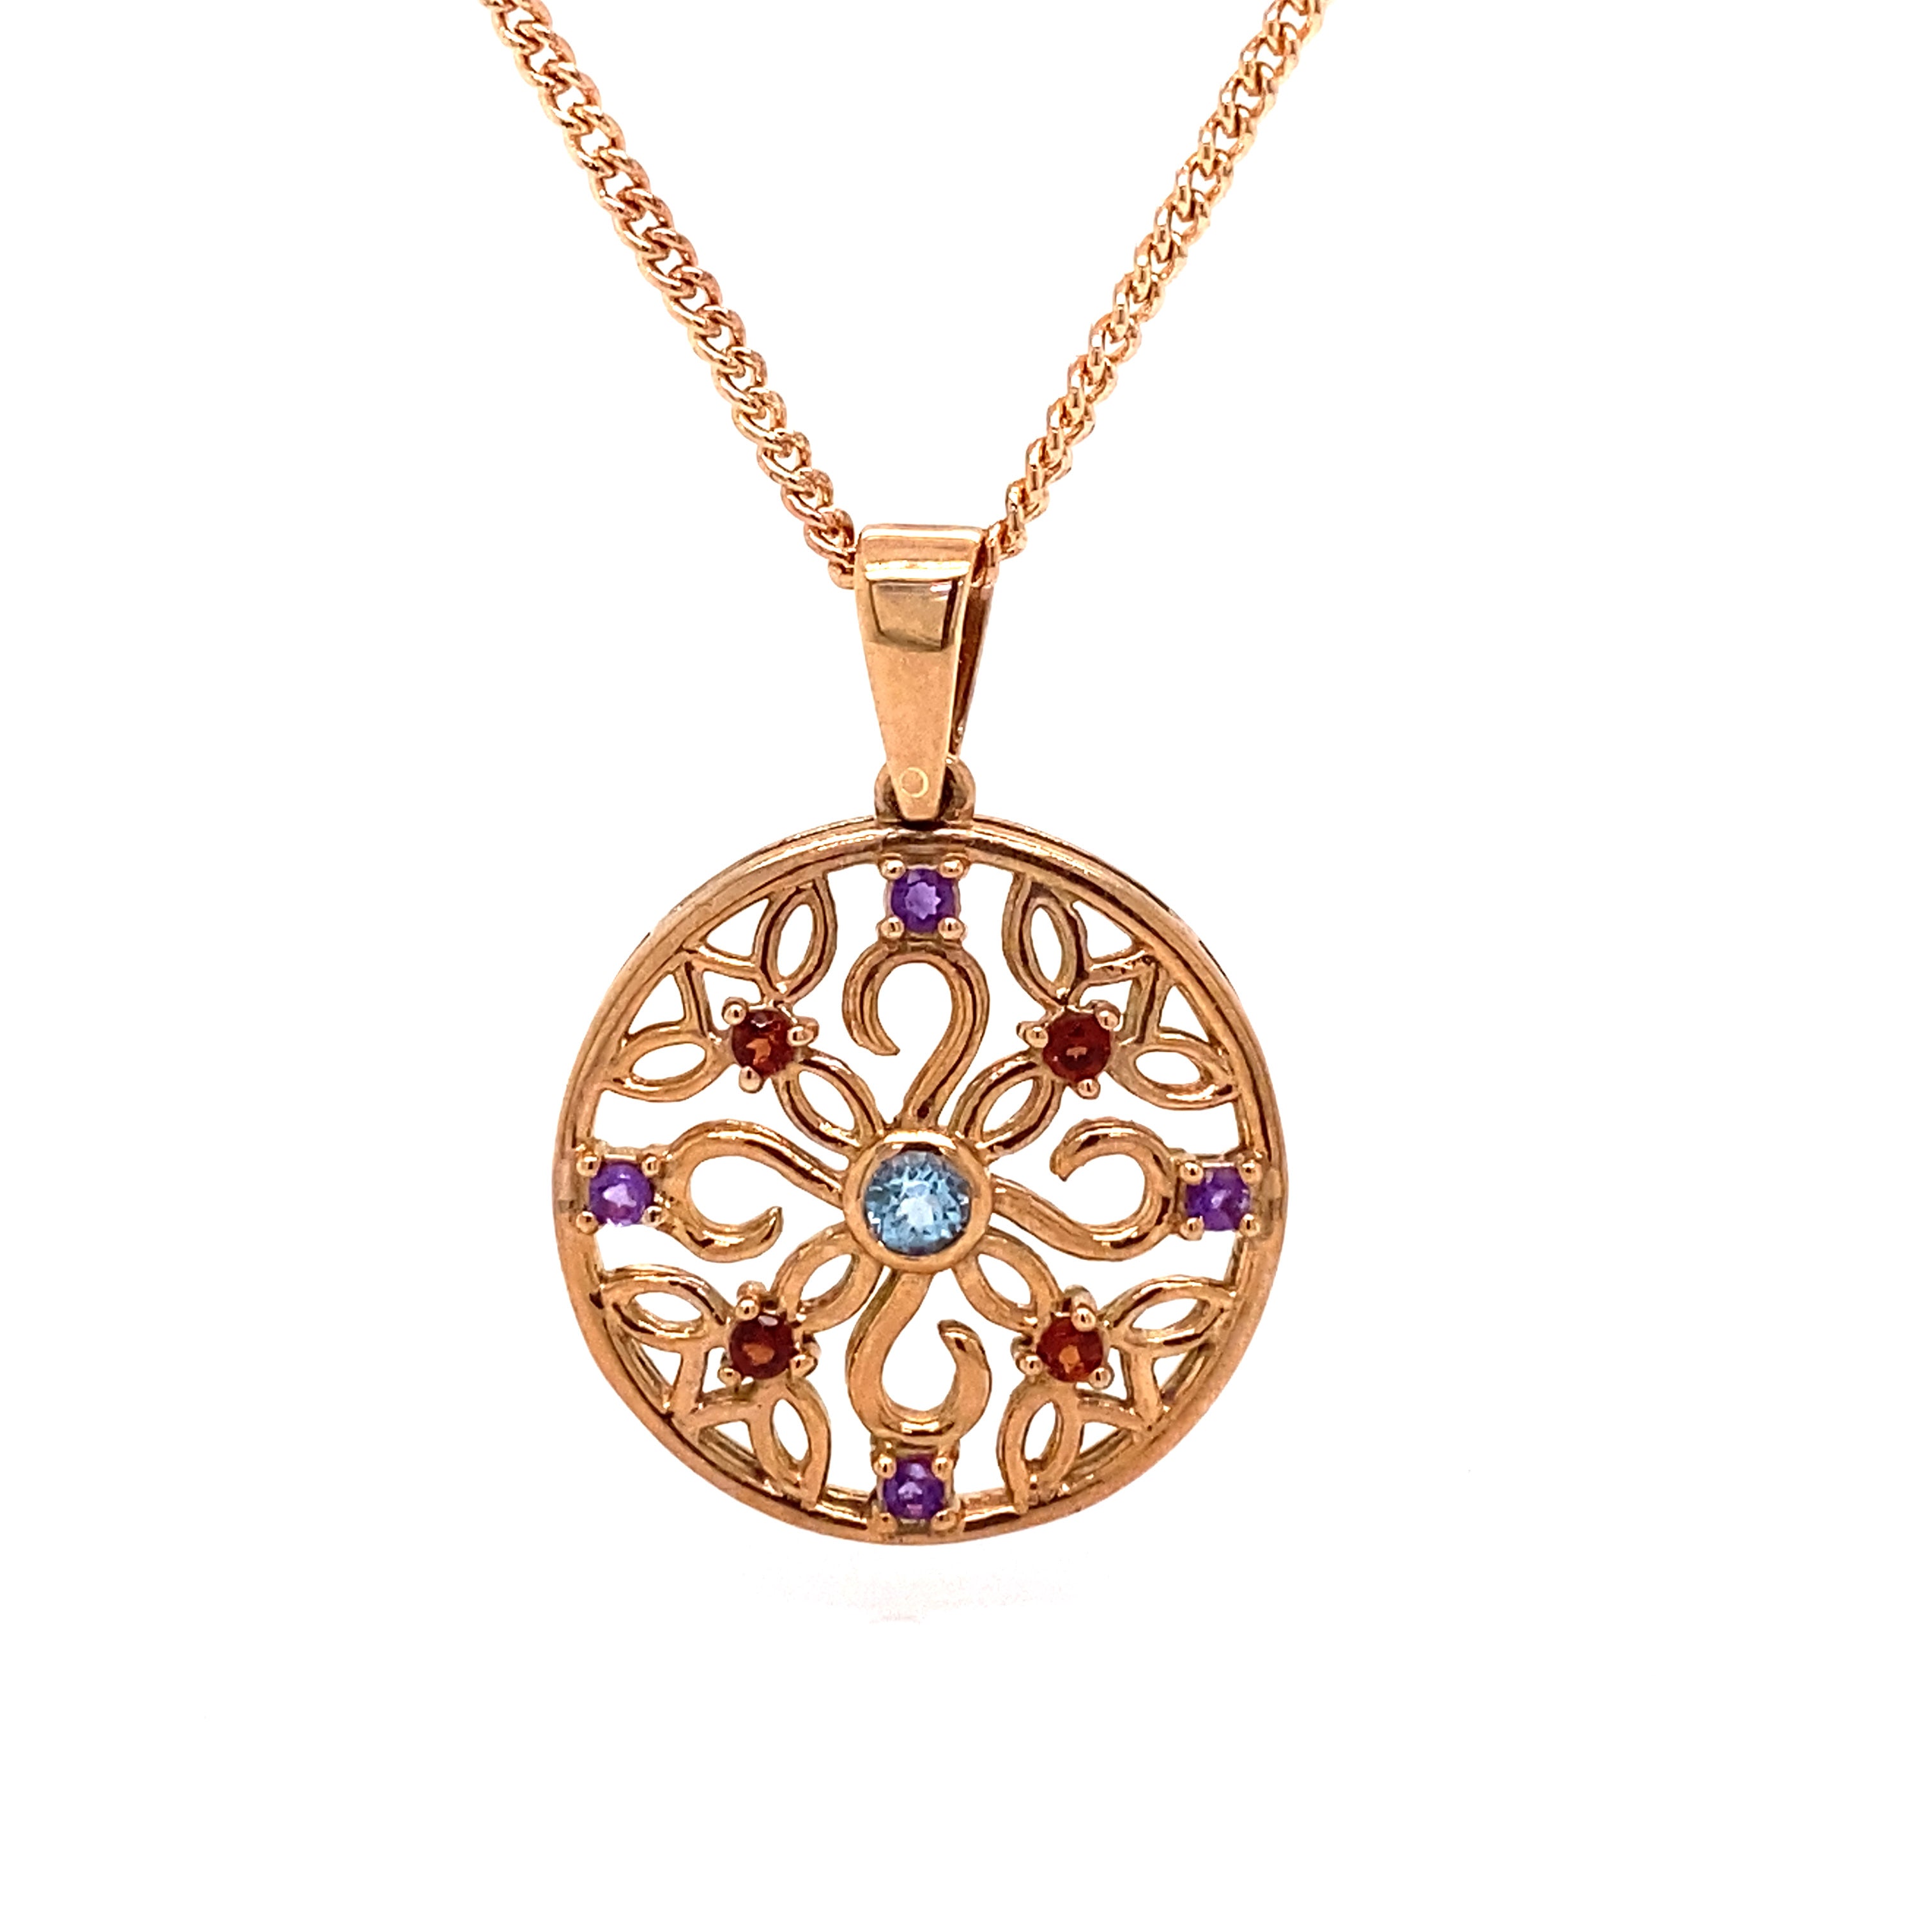 9ct rose gold multi stone pendant.